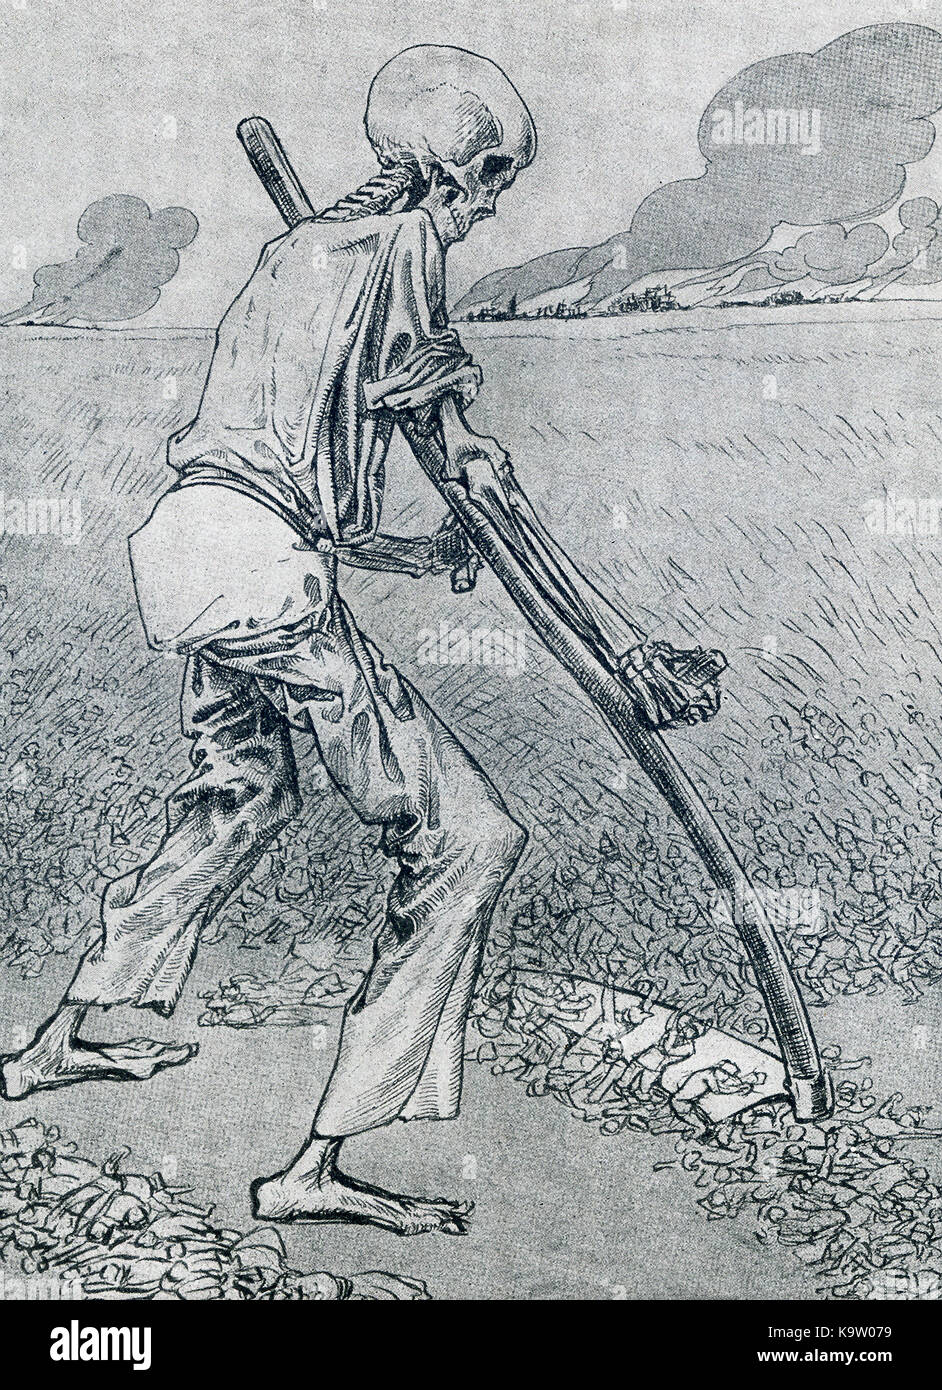 Cette illustration, une caricature, les dates de 1917. Il montre la mort avec une faucille, le fauchage des soldats pendant la Première Guerre mondiale. Banque D'Images